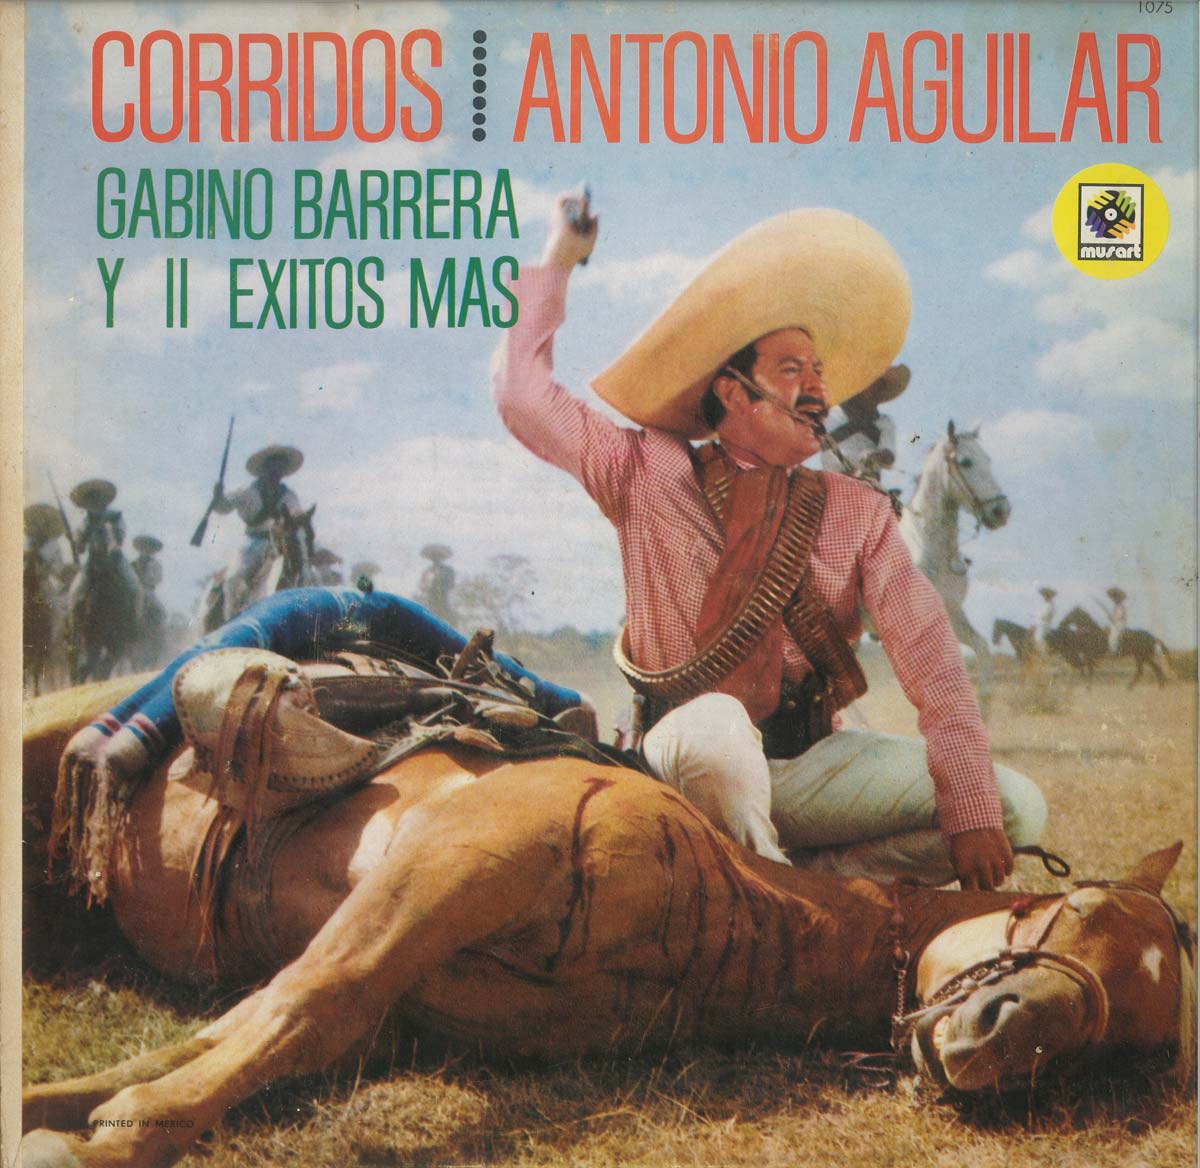 Featured Image for “Corridos Gabino Barrera y 15 Éxitos Más”